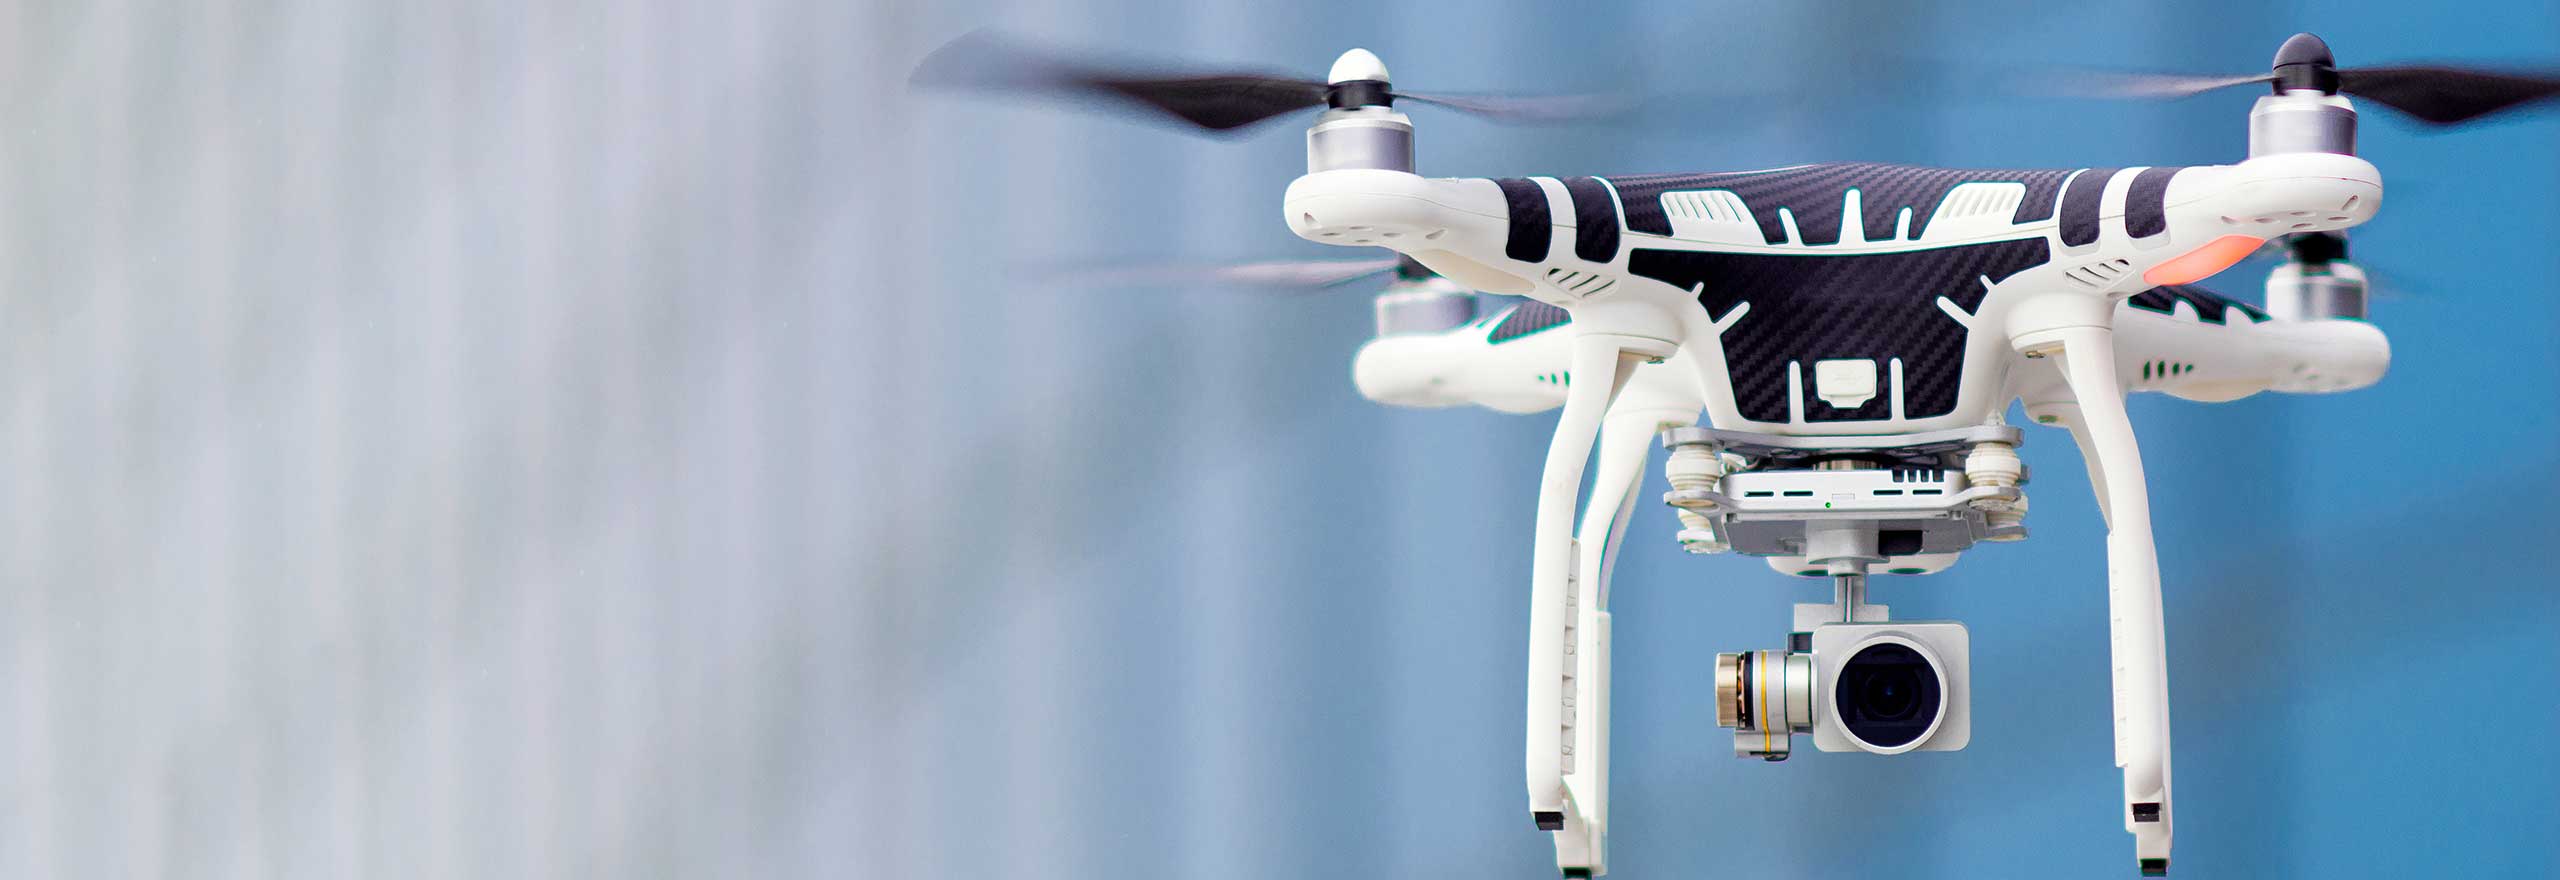 Drone sobrevoando com câmera em um fundo azul